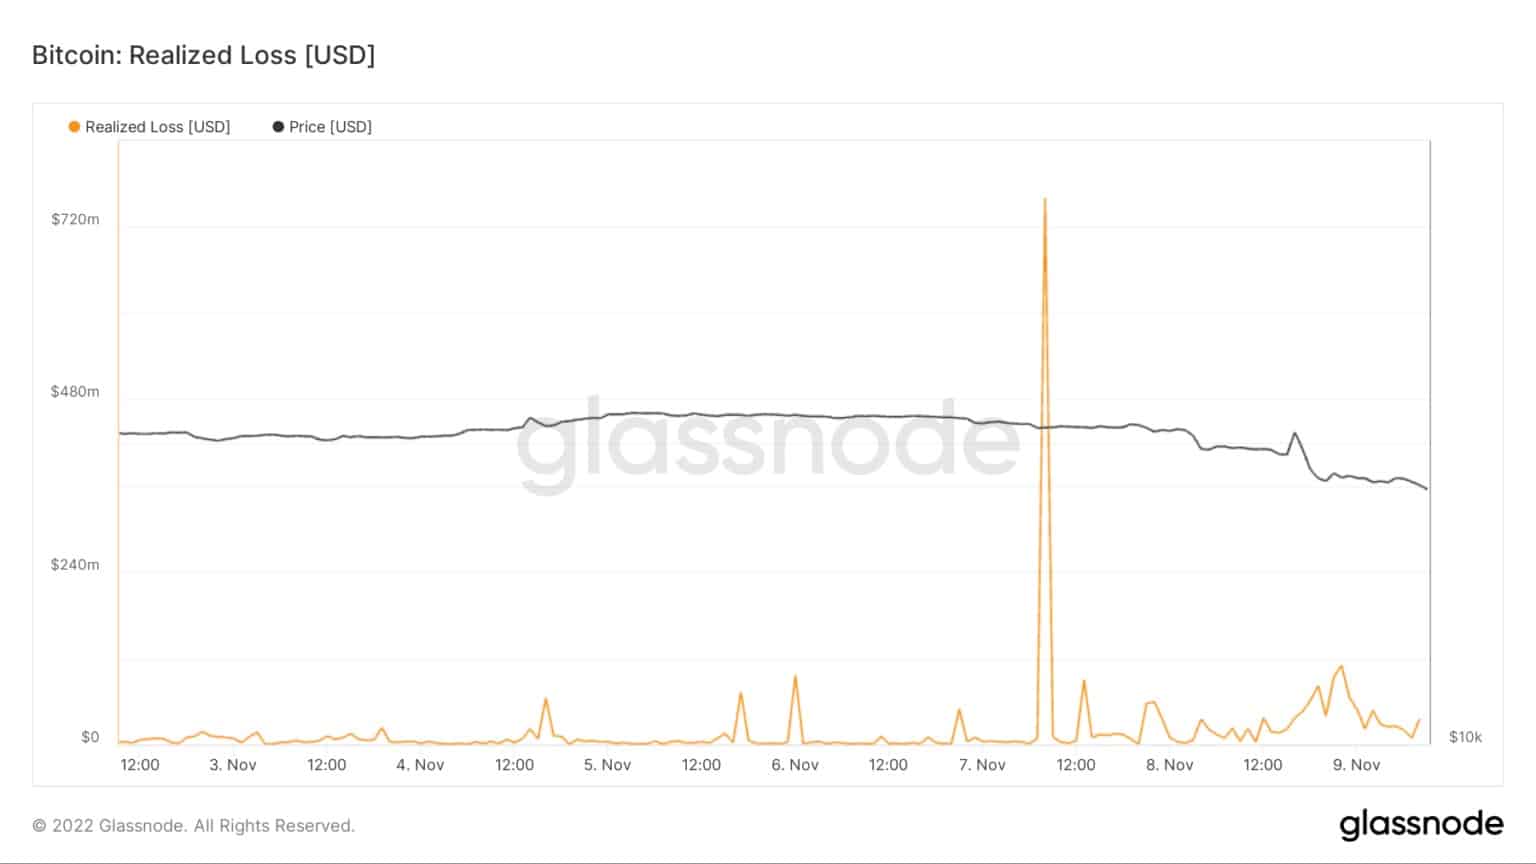 Graf znázorňující realizovanou ztrátu bitcoinu od 3. listopadu do 9. listopadu (zdroj: Glassnode)